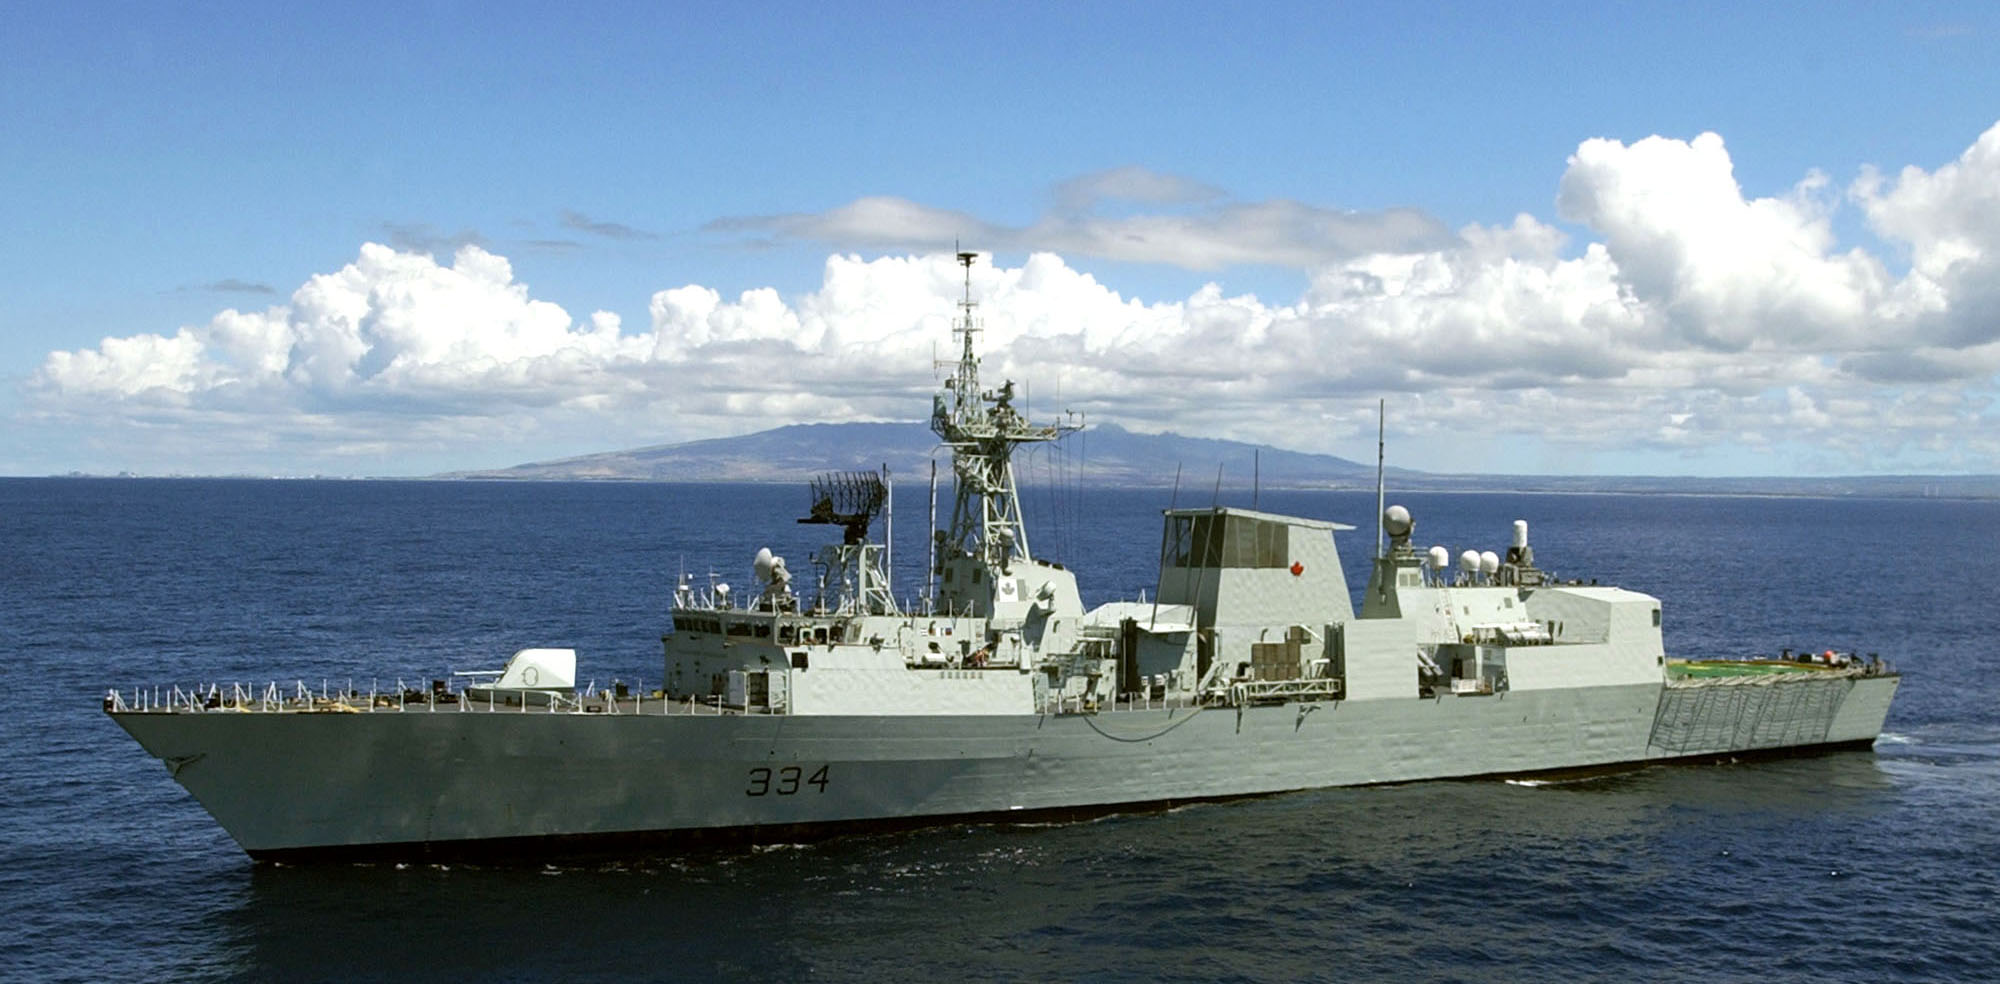 Canadian frigate HMCS Regina (FFH 334)